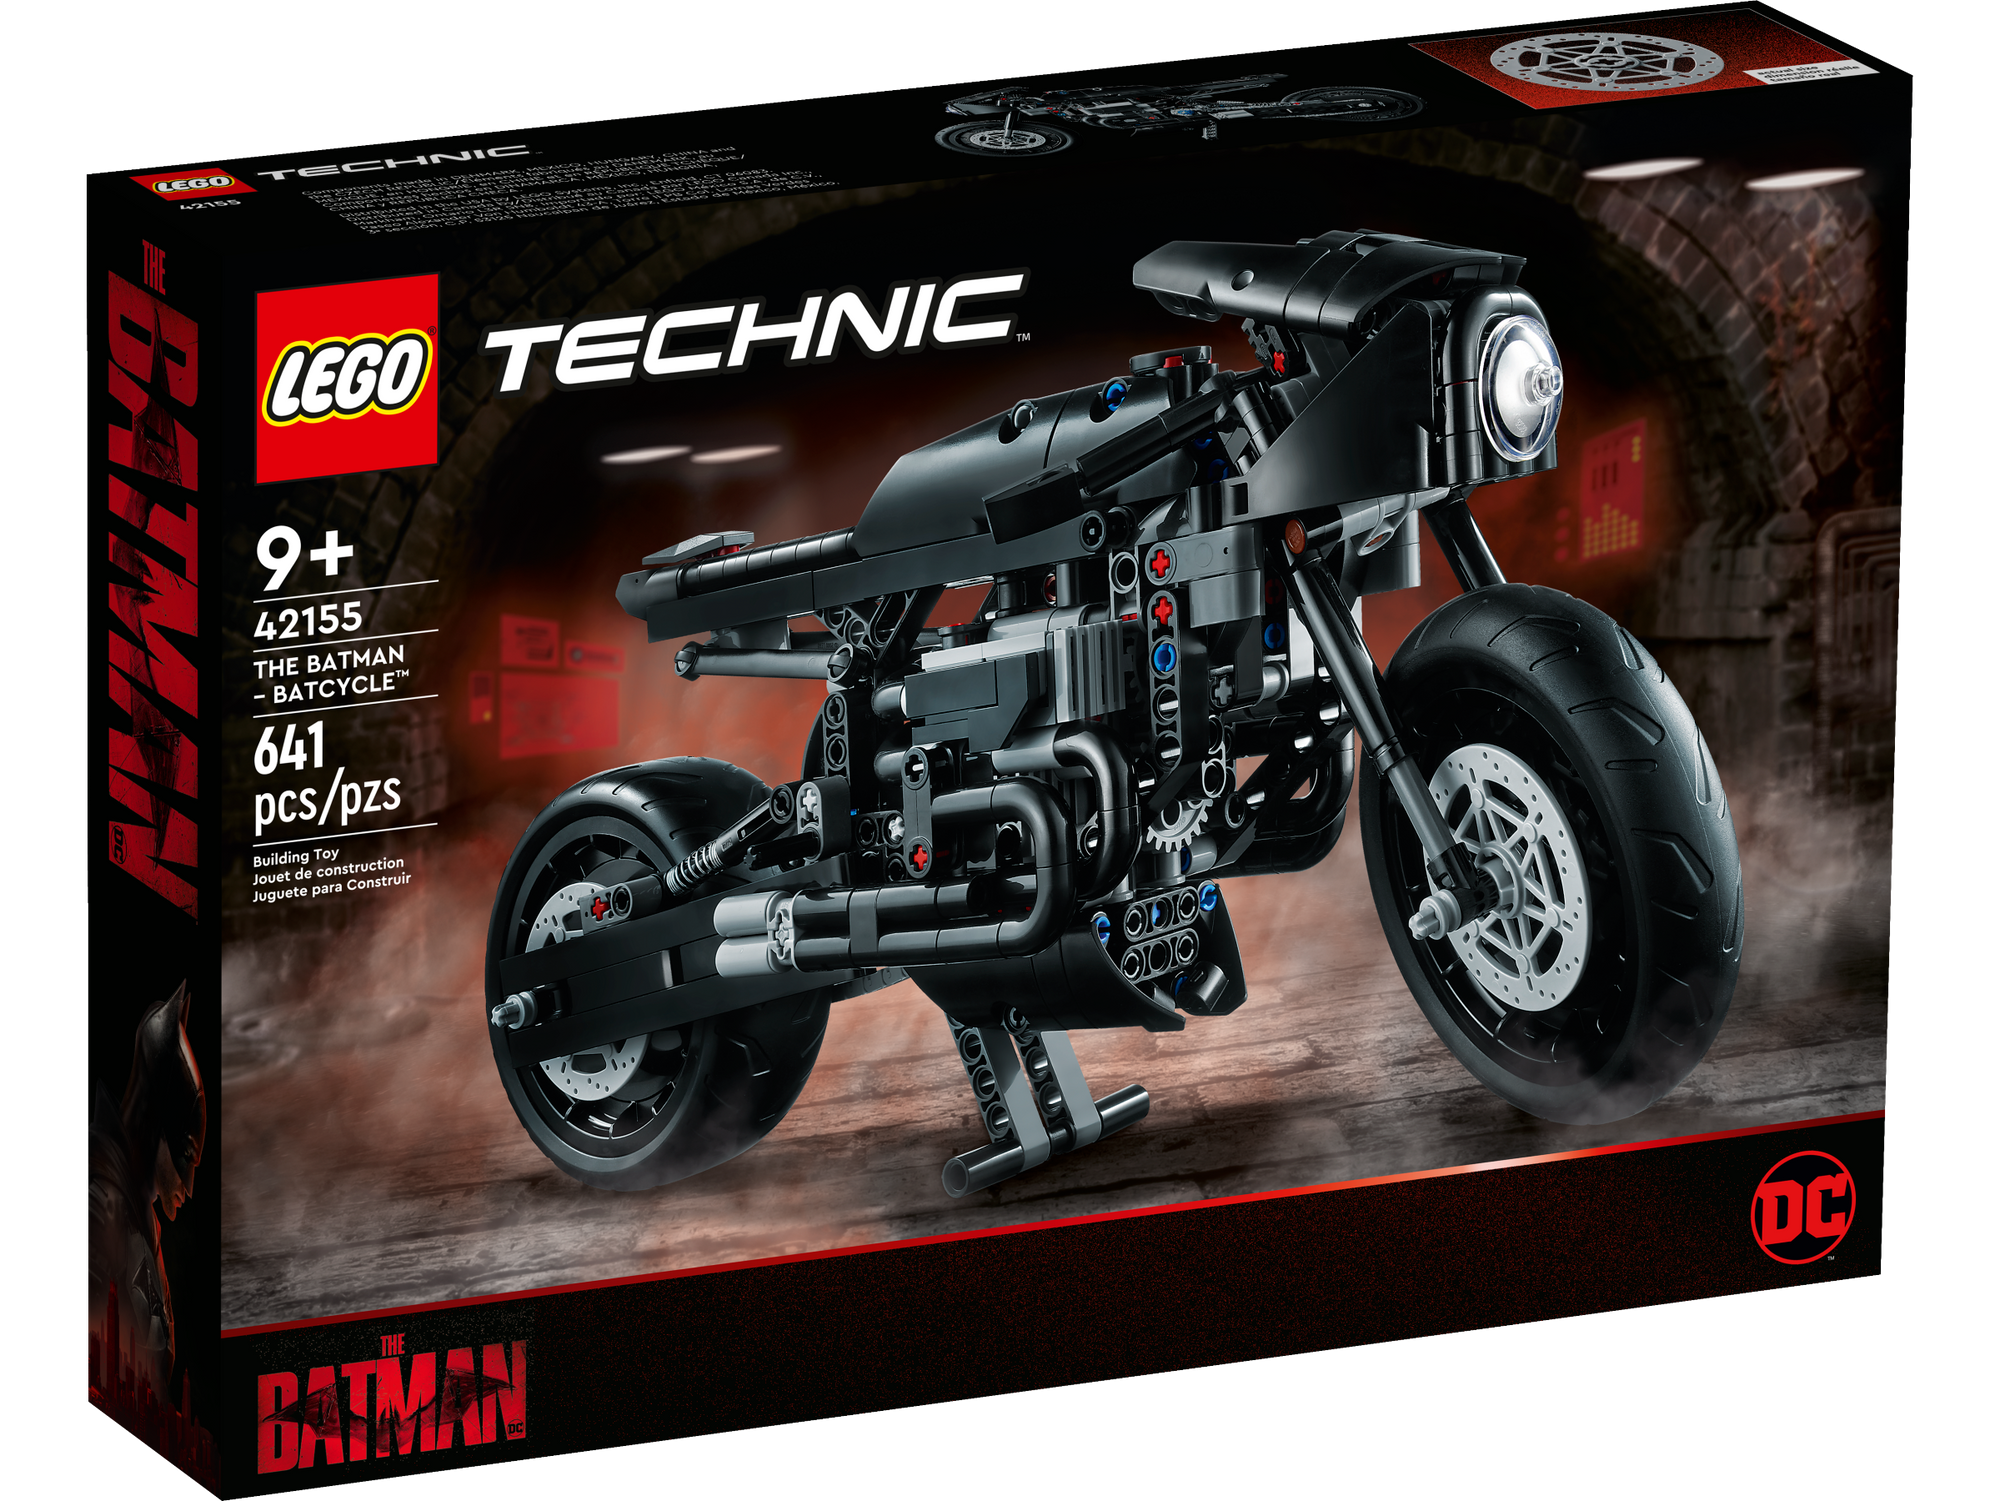 Lego Technic 42155 The Batman Batcycle